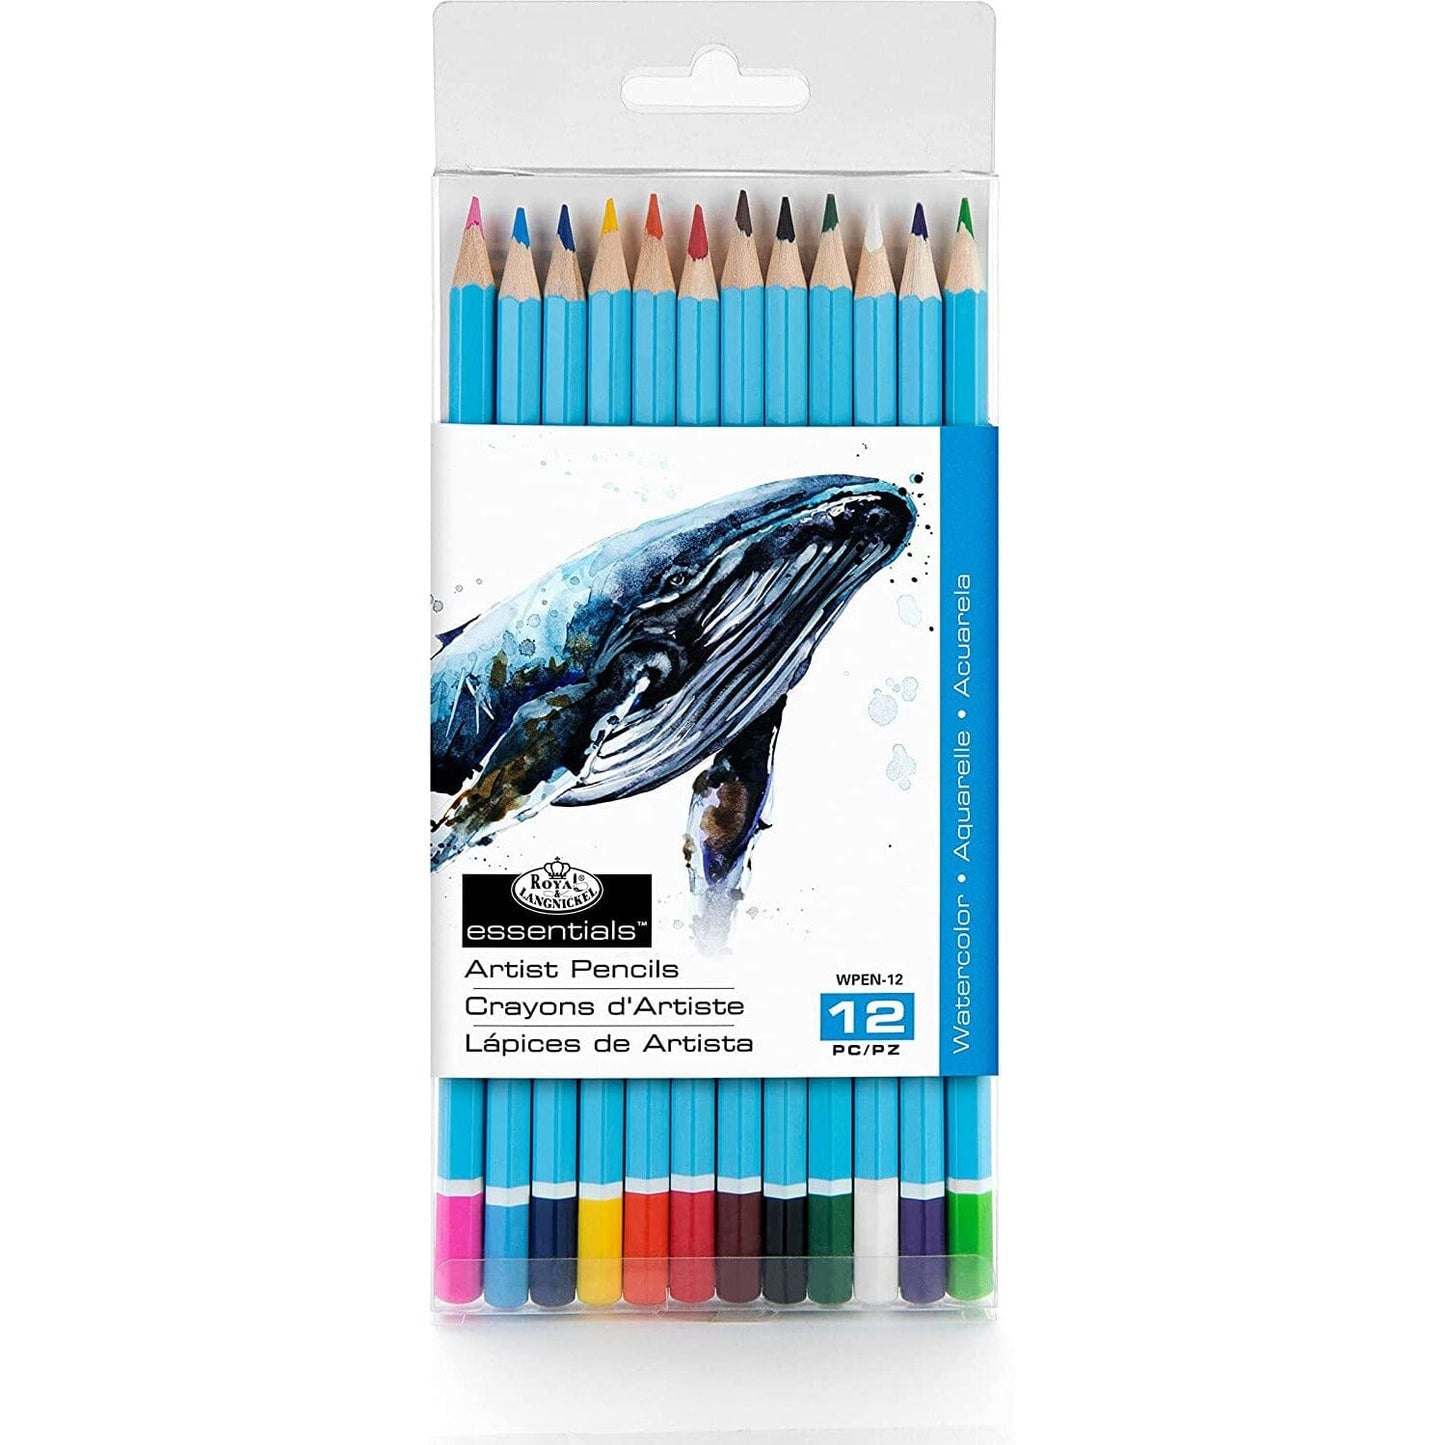 Watercolor Pencils Drawing & Painting Kits Royal Brush Set of 12